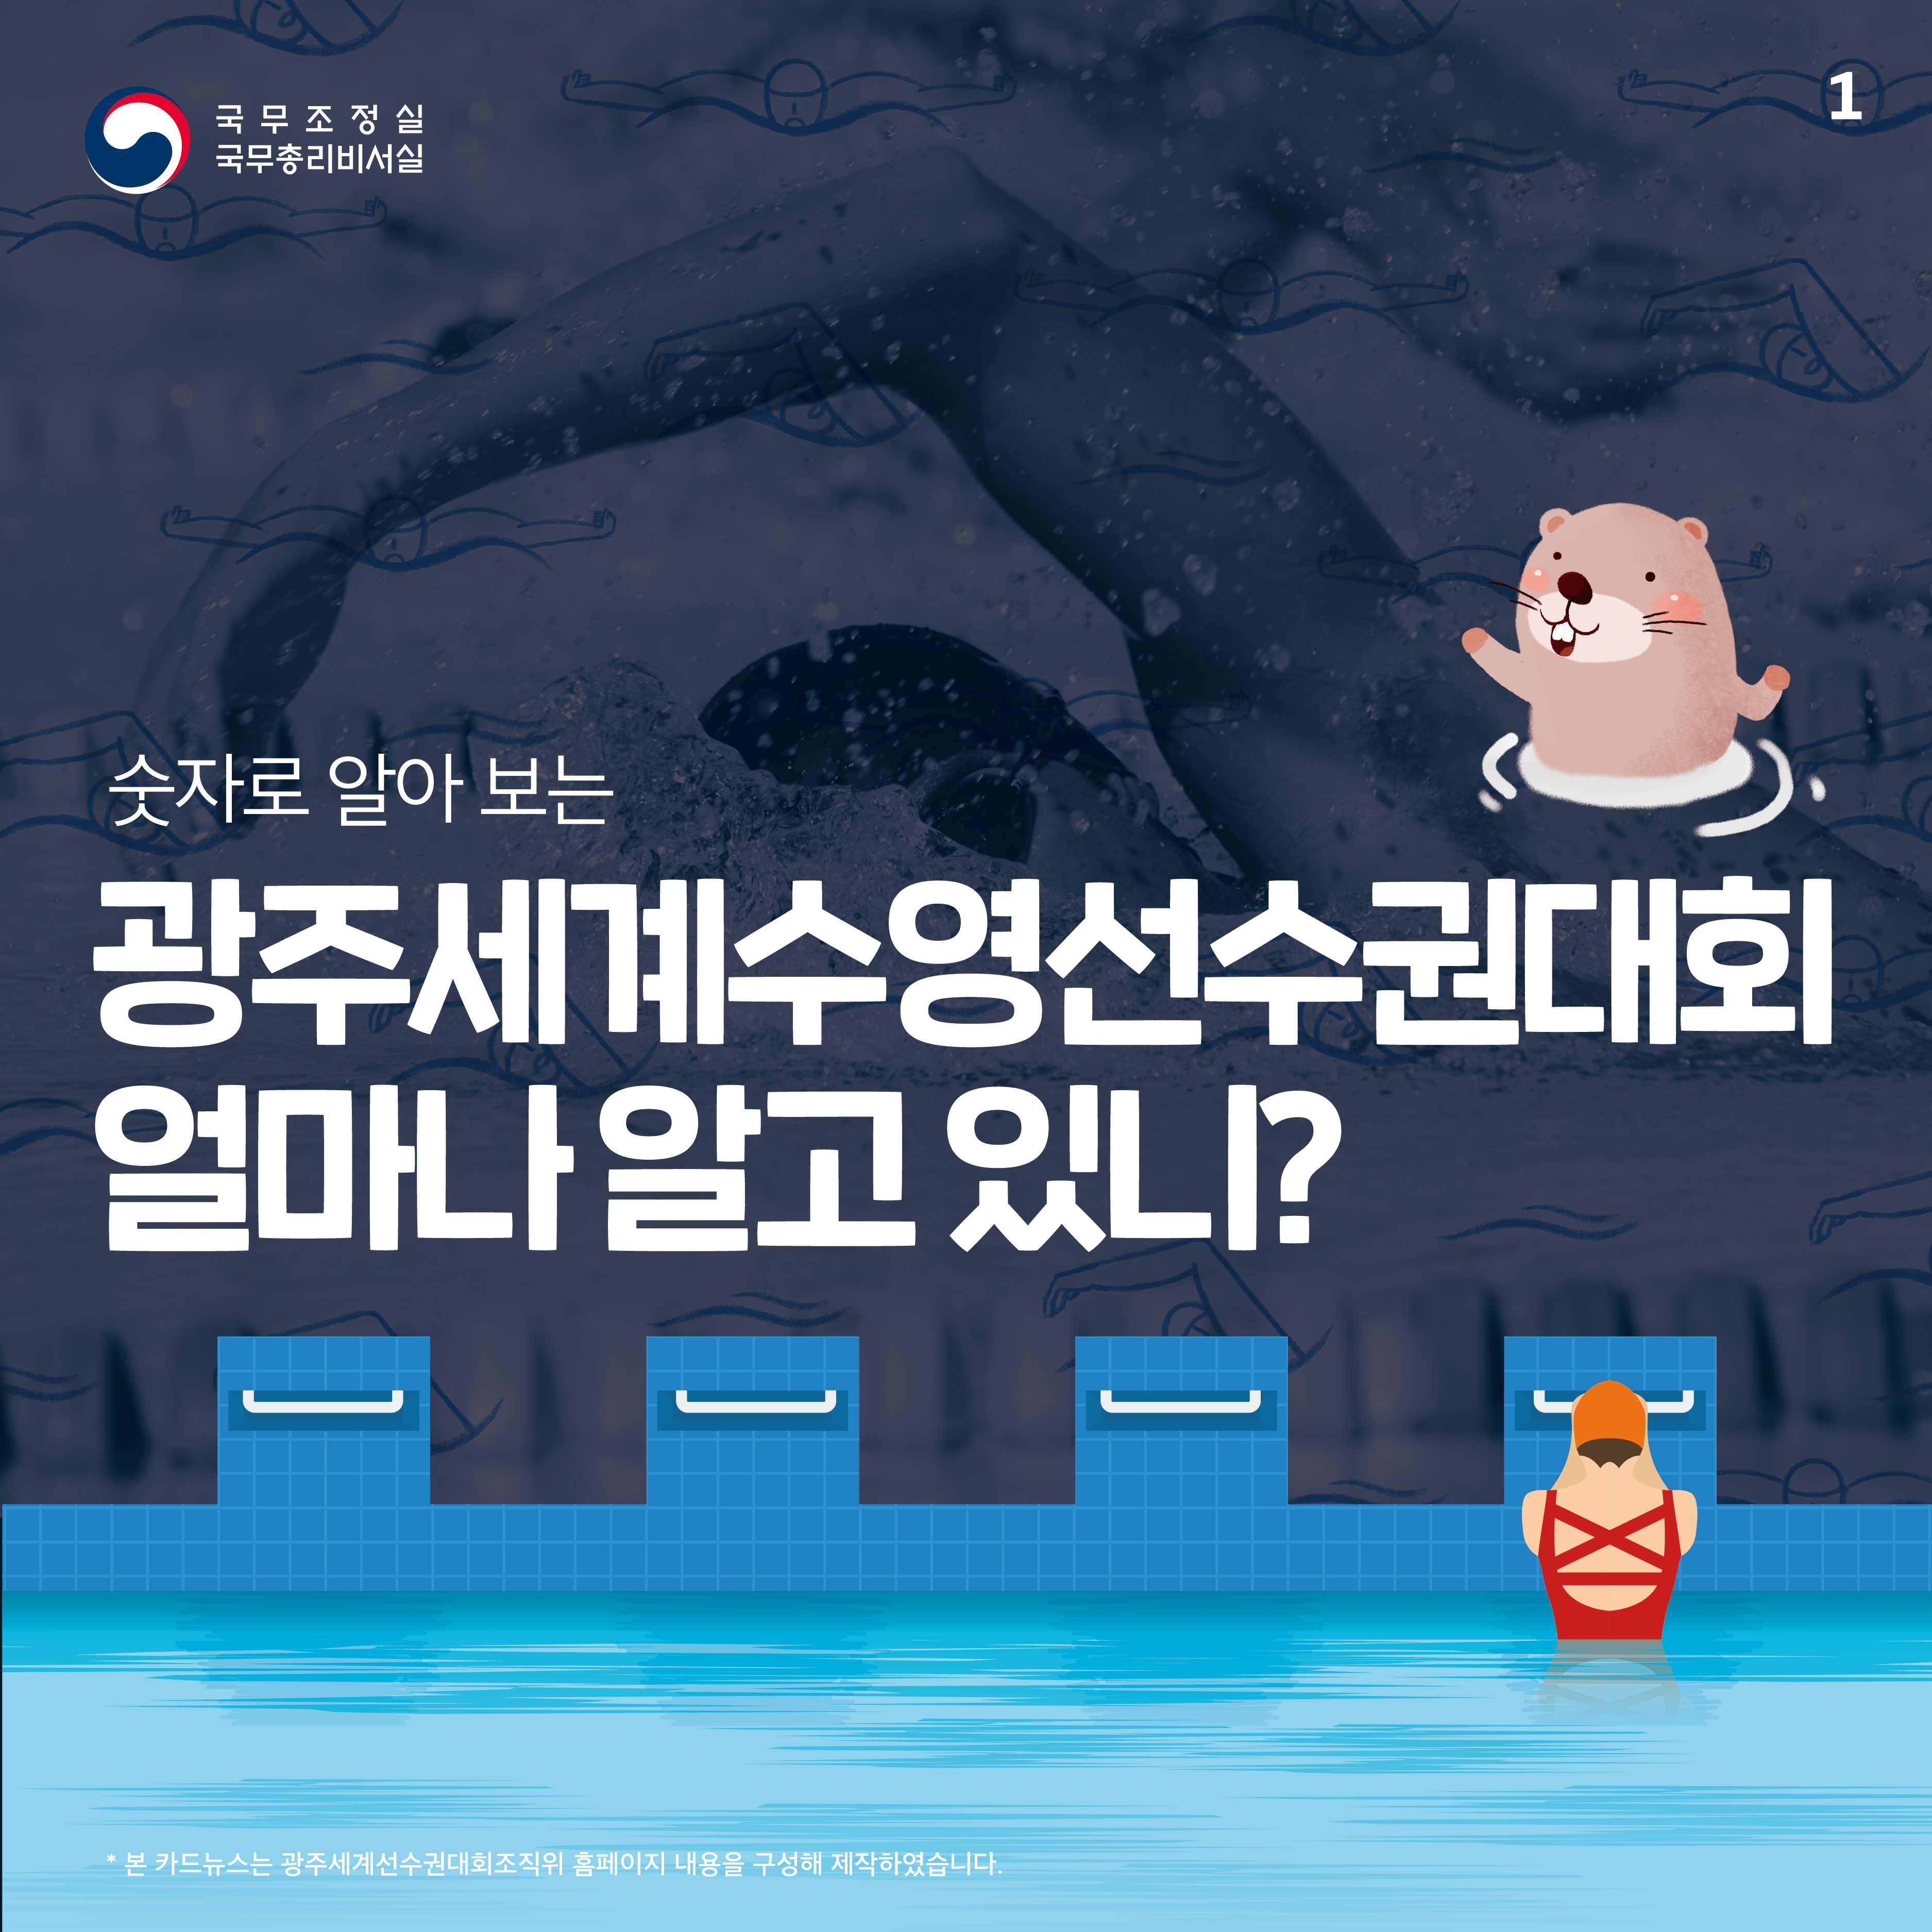 광주세계수영선수권대회 얼마나 알고 있니?